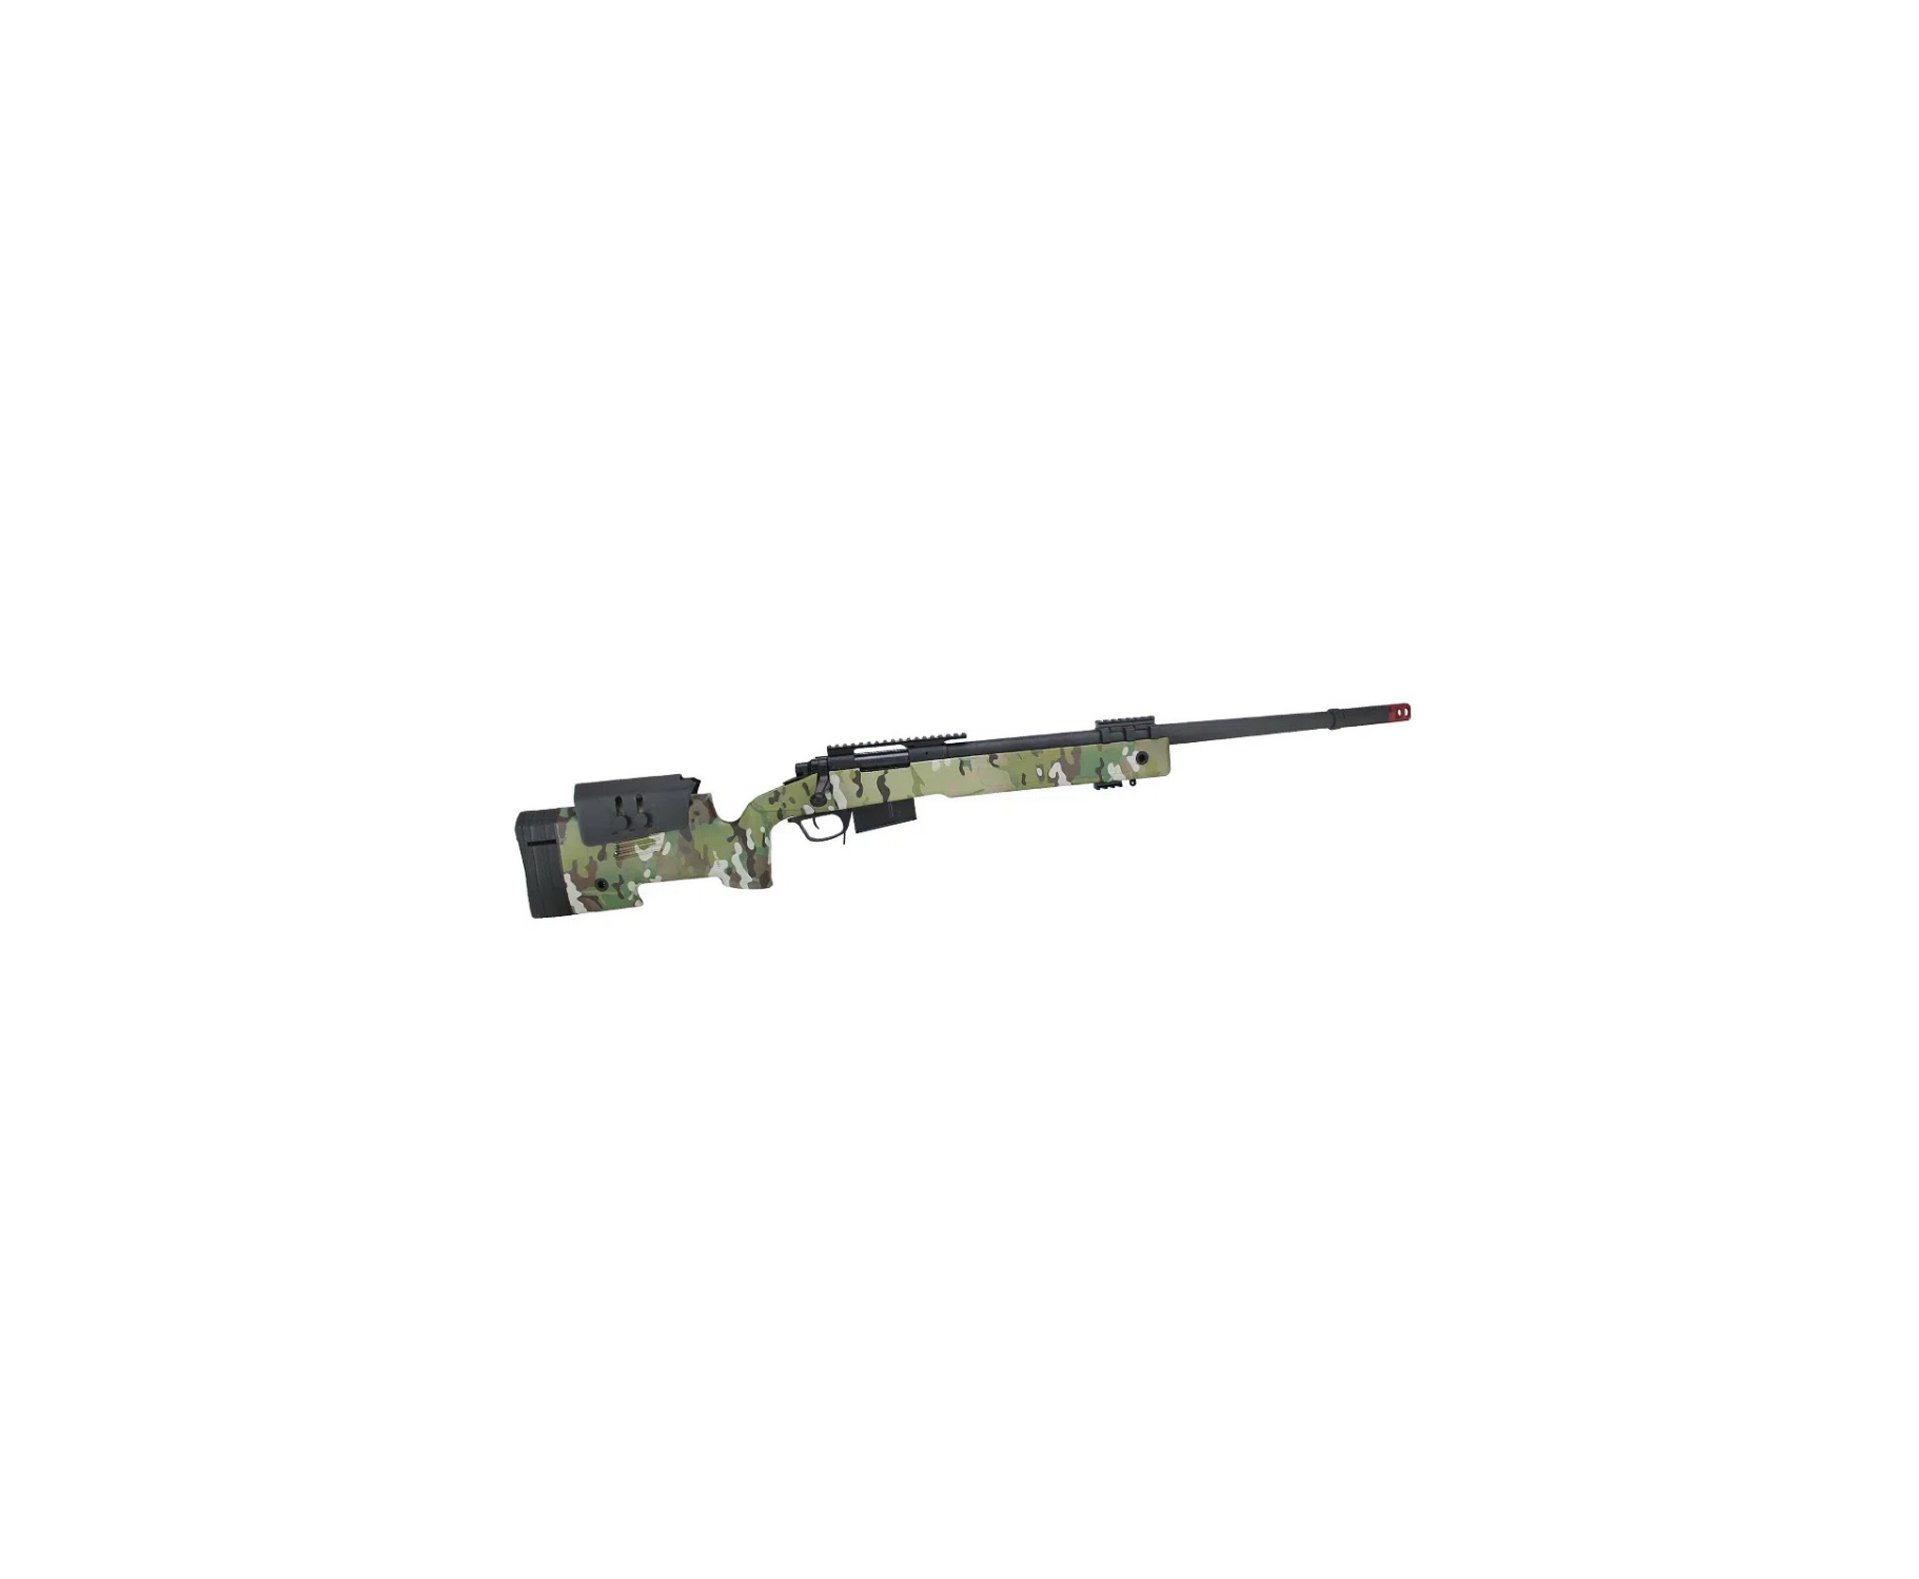 Rifle de Airsoft Sniper M40 A5 VSR10 SA-S03 Core S-Series Multicam - Specna Arms + BBs + Alvos + Óleo de Silicone + Luneta 4-16x50